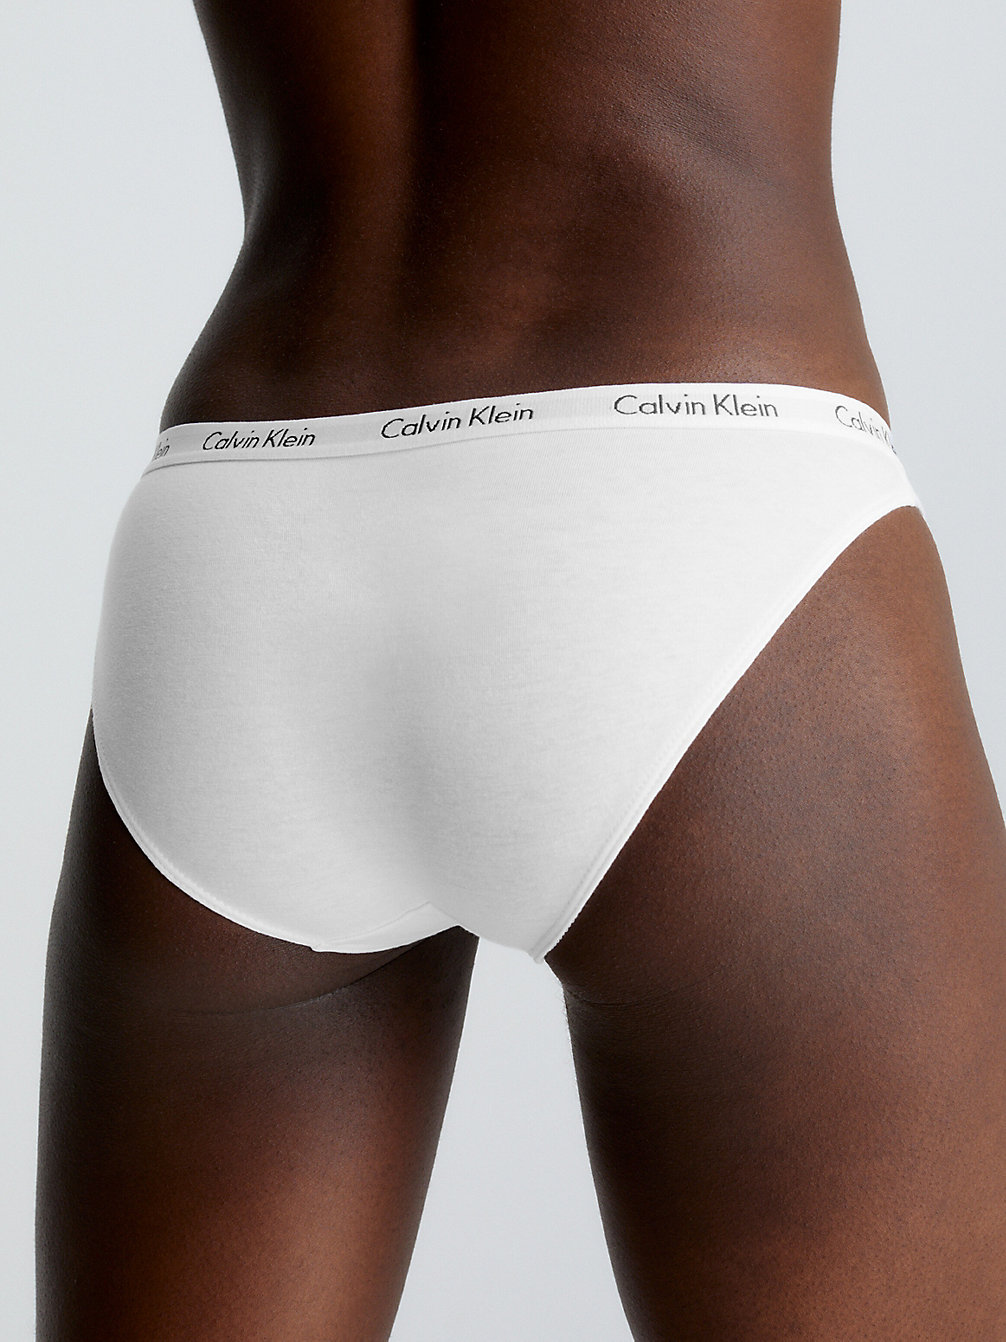 WHITE > Figi - Carousel > undefined Kobiety - Calvin Klein